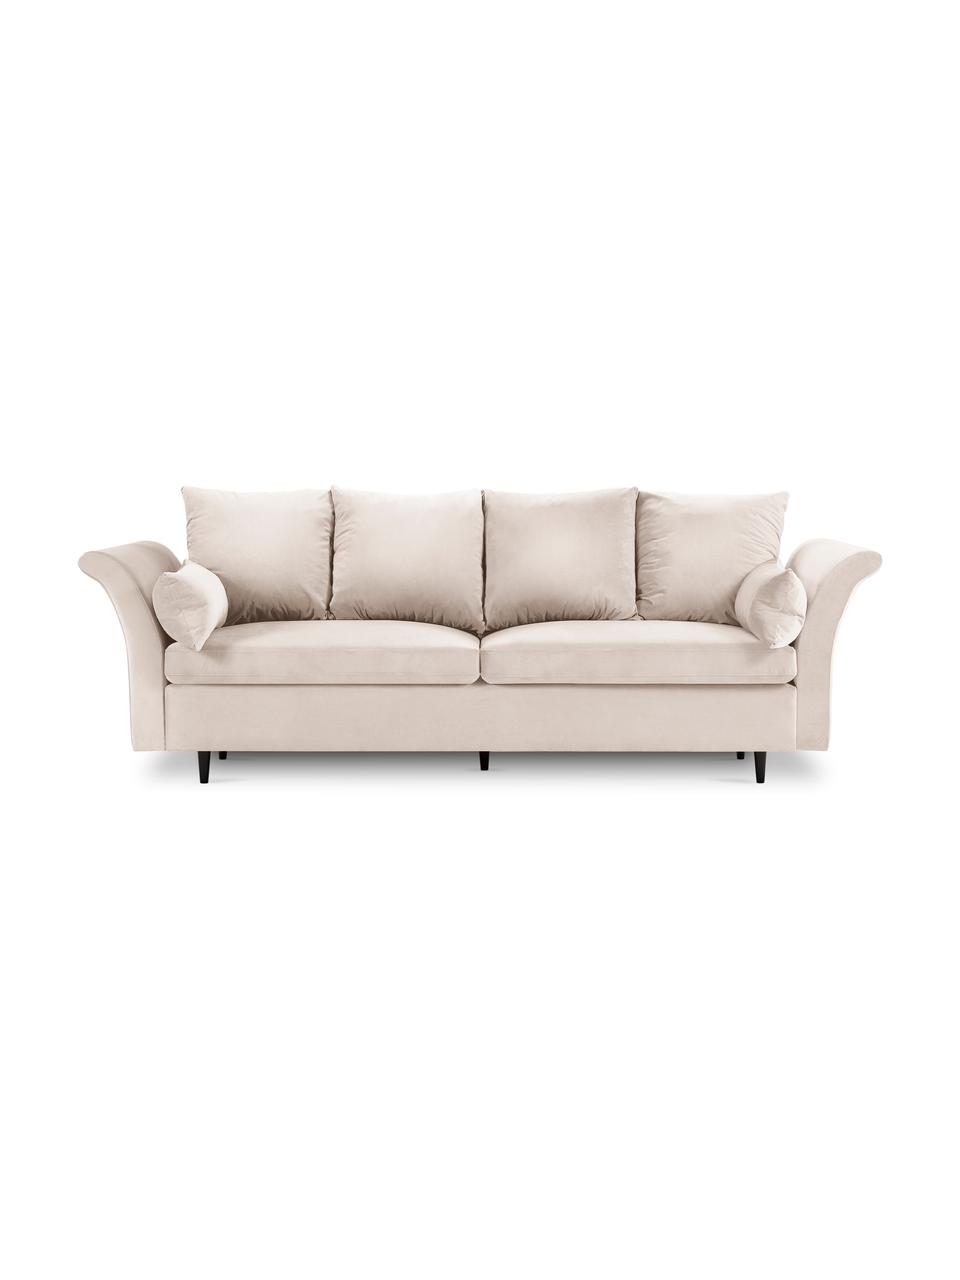 Sofa rozkładana z aksamitu z funkcją przechowywania Lola (3-osobowa), Tapicerka: 100% aksamit poliestrowy , Nogi: drewno, Beżowa tkanina, S 245 x G 95 cm